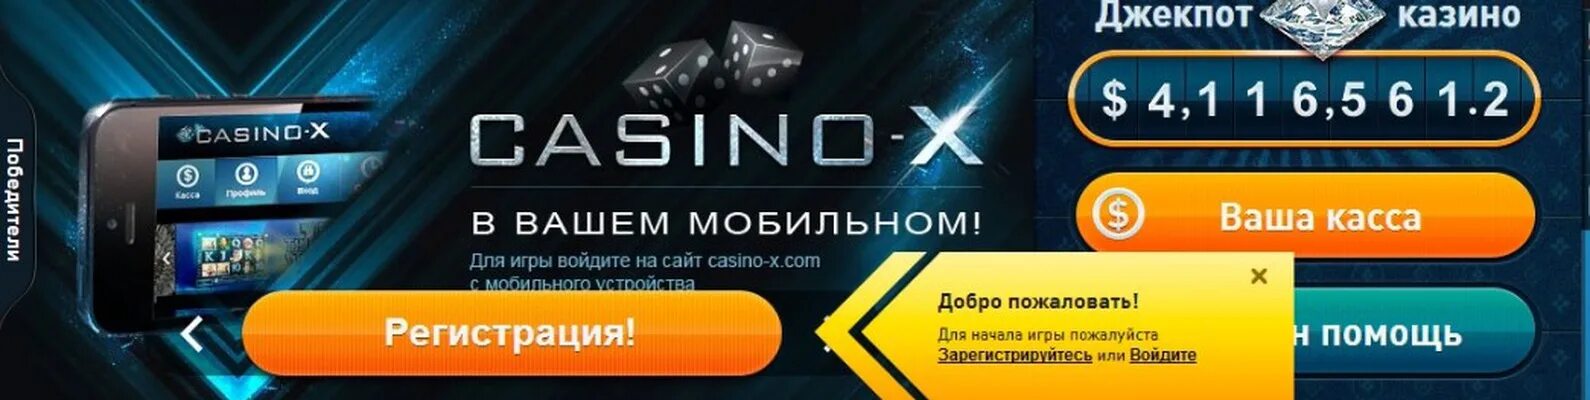 Casino x клуб официально mobile зеркало. Казино х. Казино Икс Casino-x. Casino x зеркало.